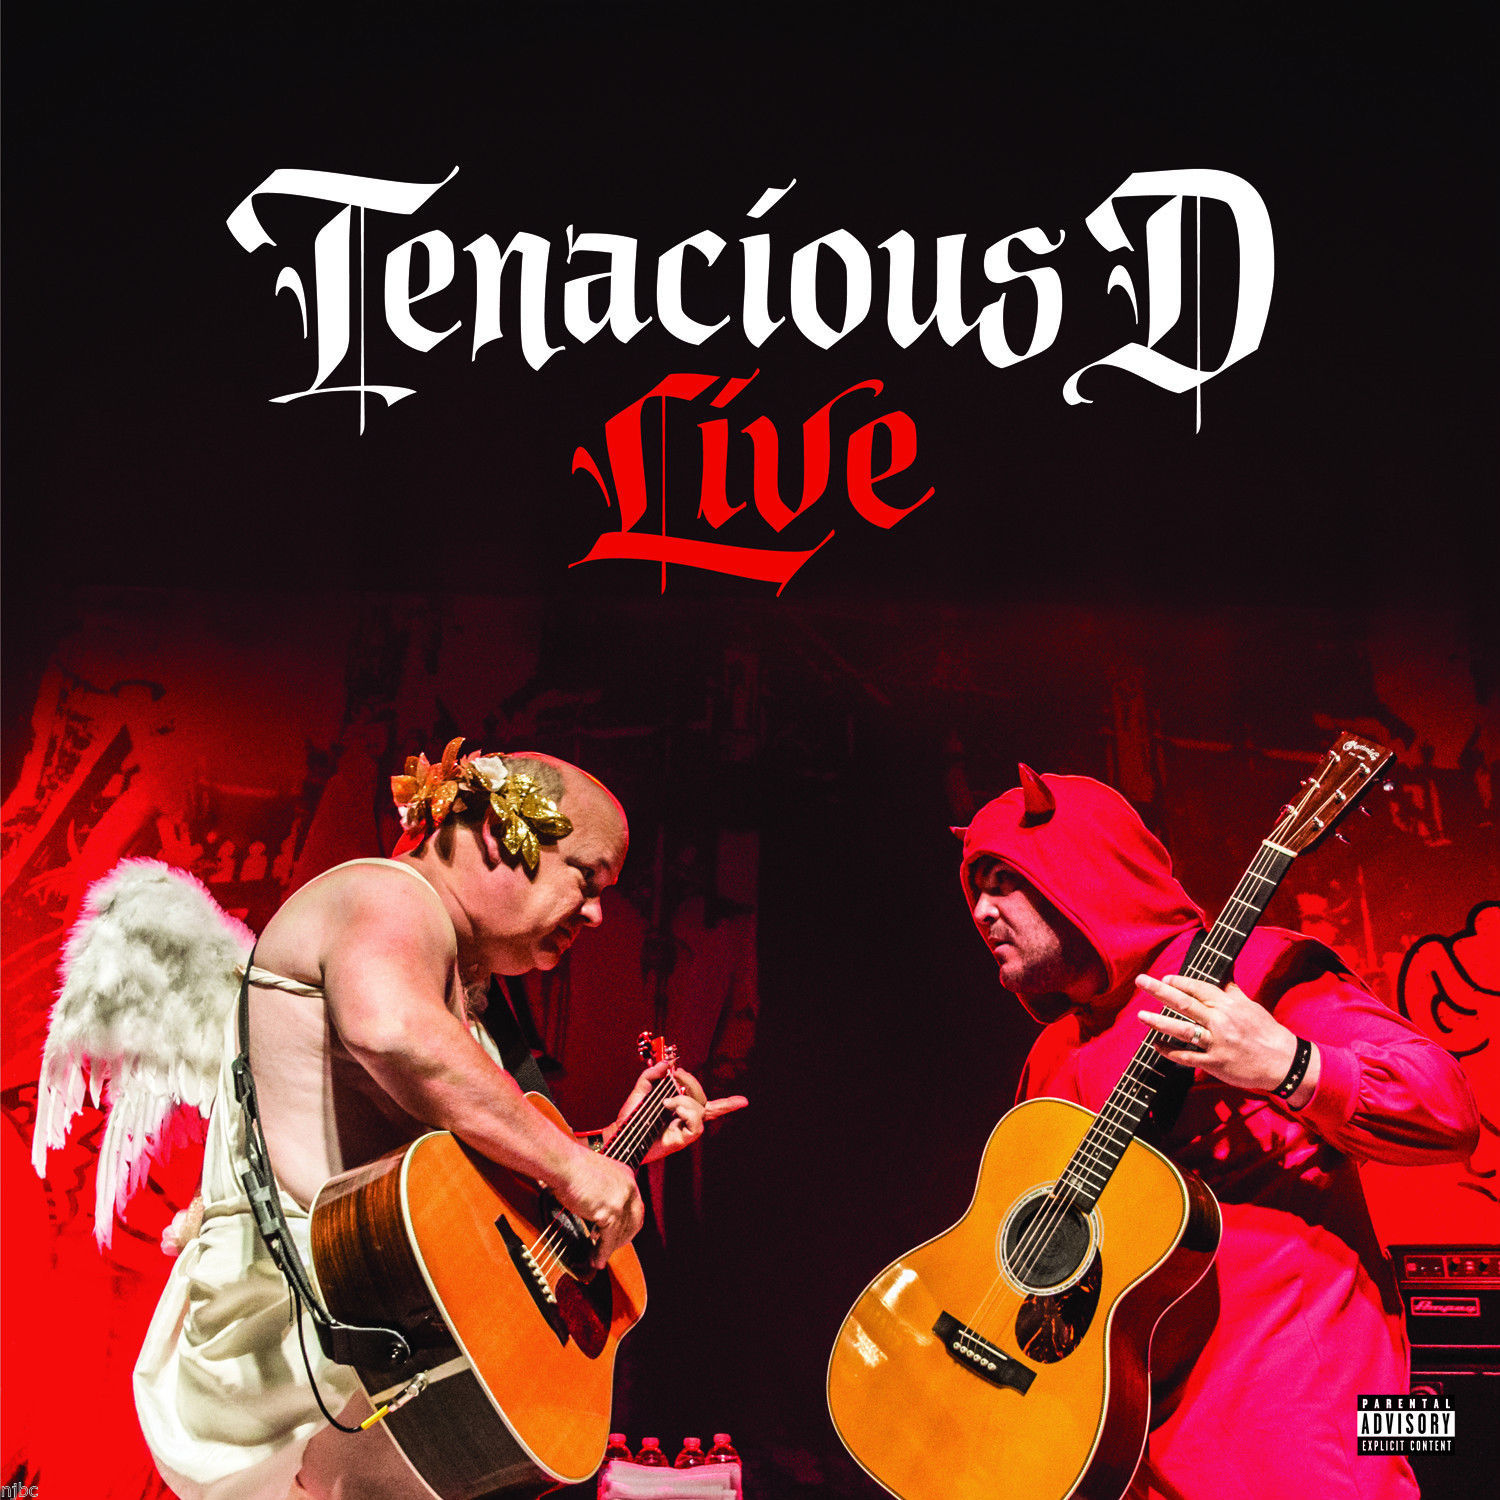 Tenacious d game. Tenacious d рок-группа. Tenacious d Rise of the Fenix Live. Tenacious d Tenacious d. Tenacious d альбомы.